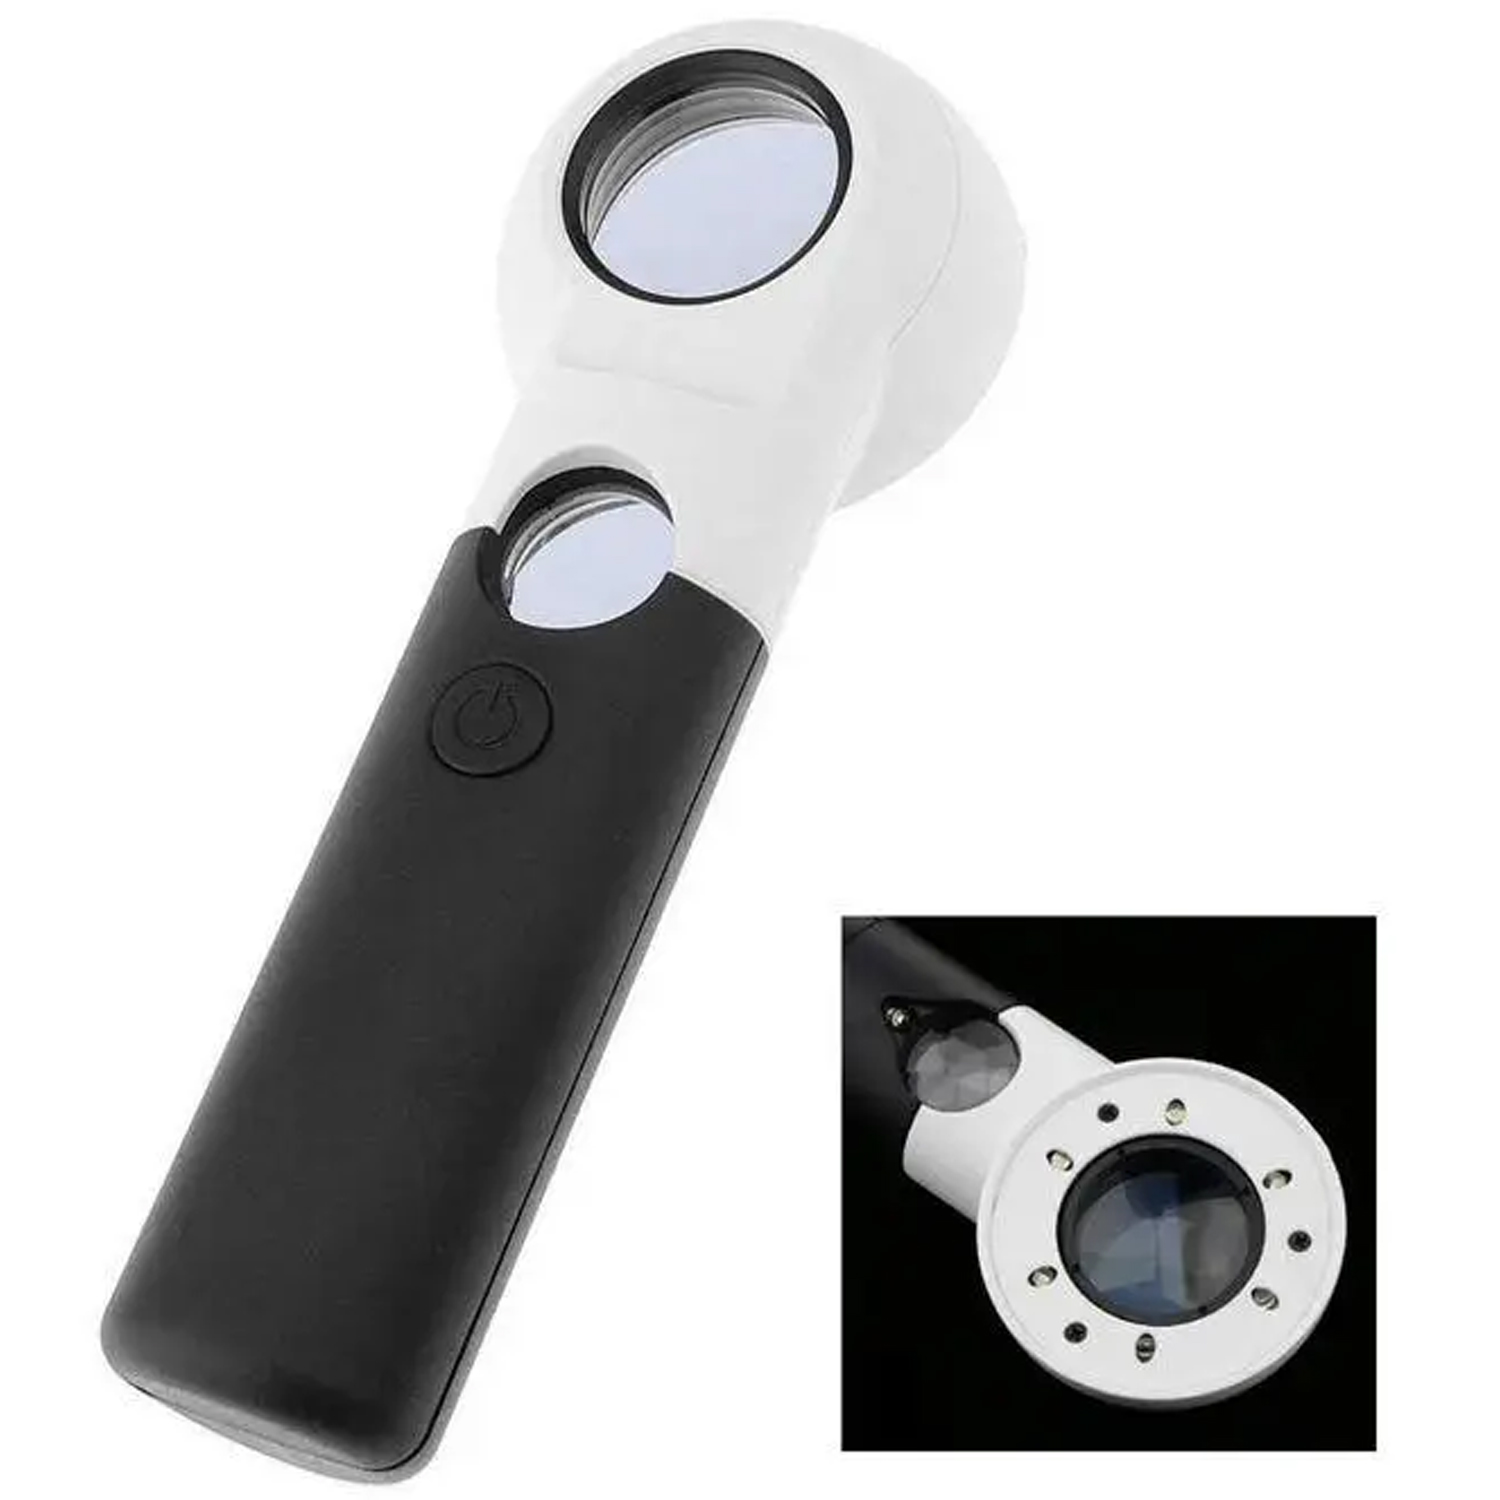 Лупа ручная Magnifier CH30-6L c LED подсветкой, фото